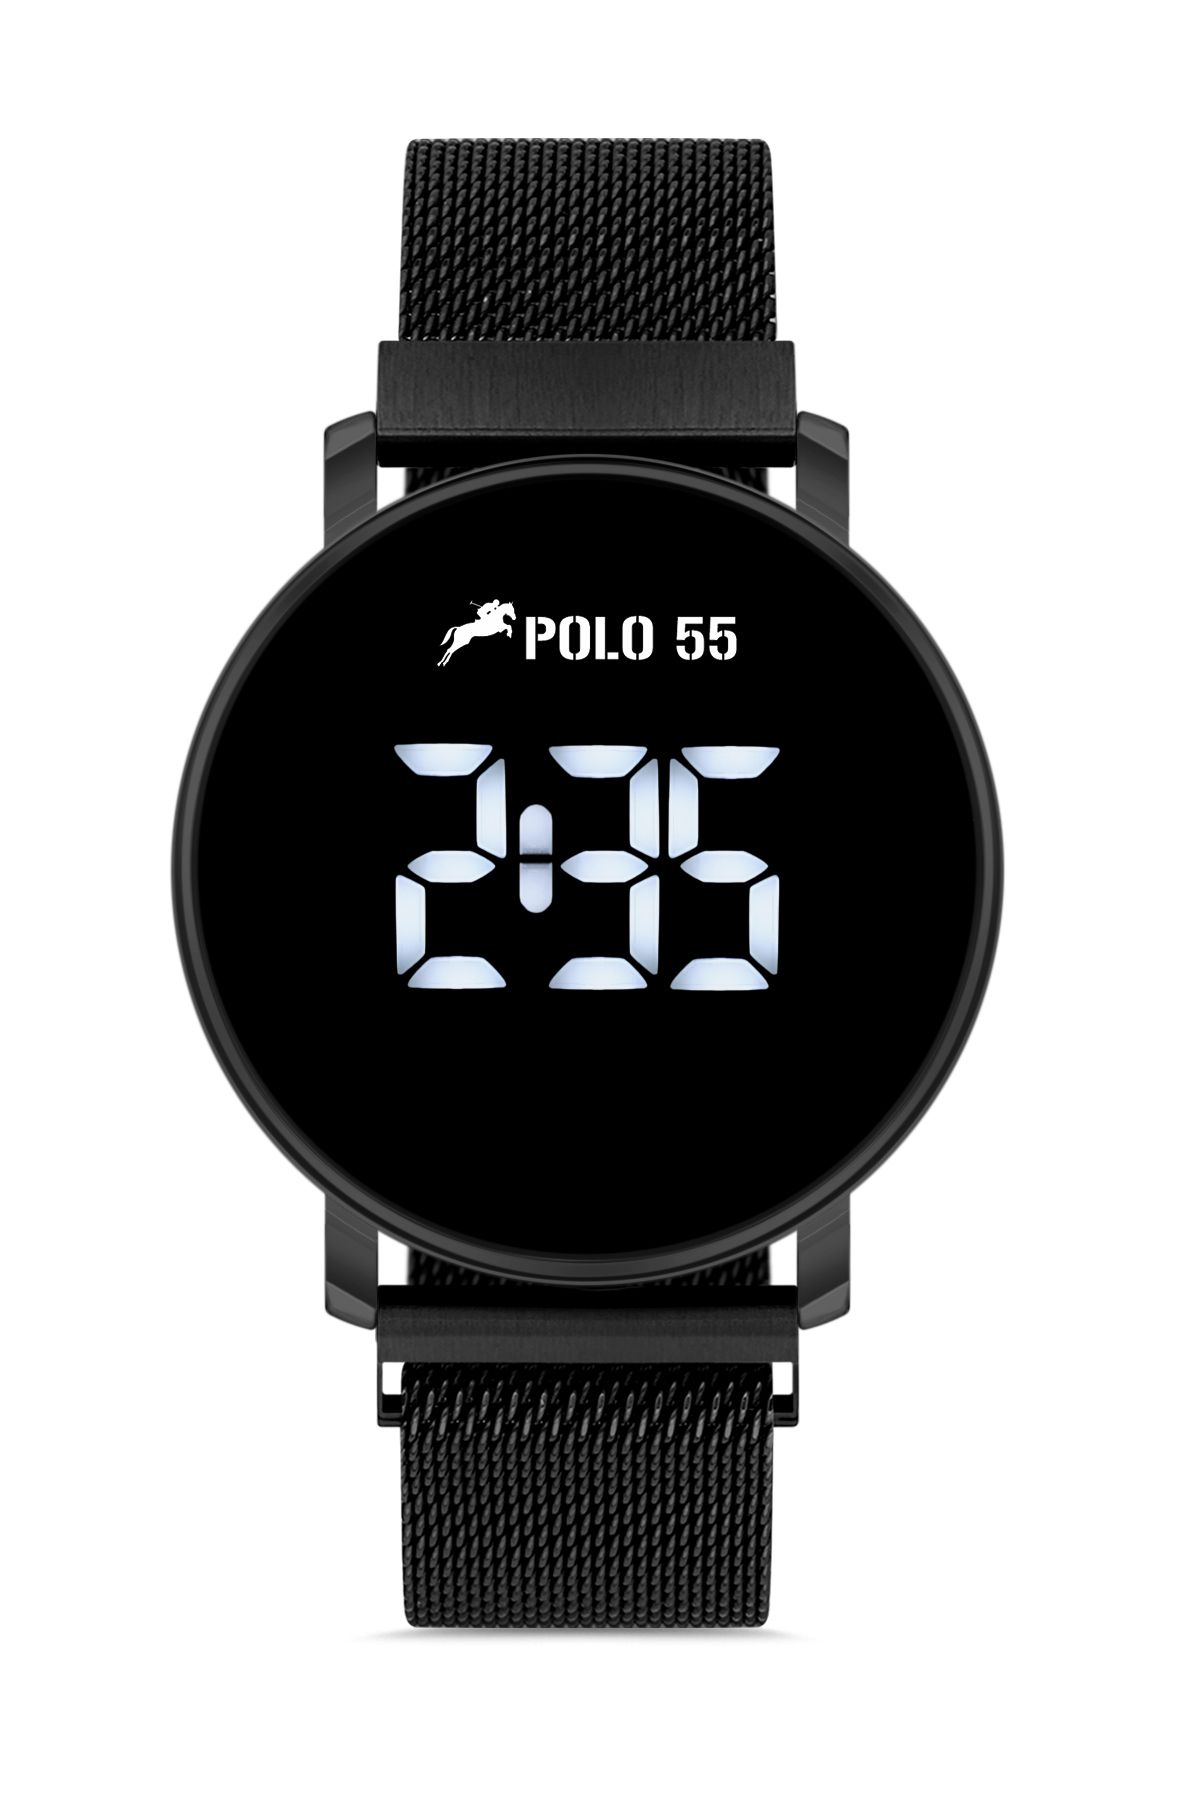 Polo55 Siyah Dokunmatik Dijital Hasır Kordon Erkek Kol Saati